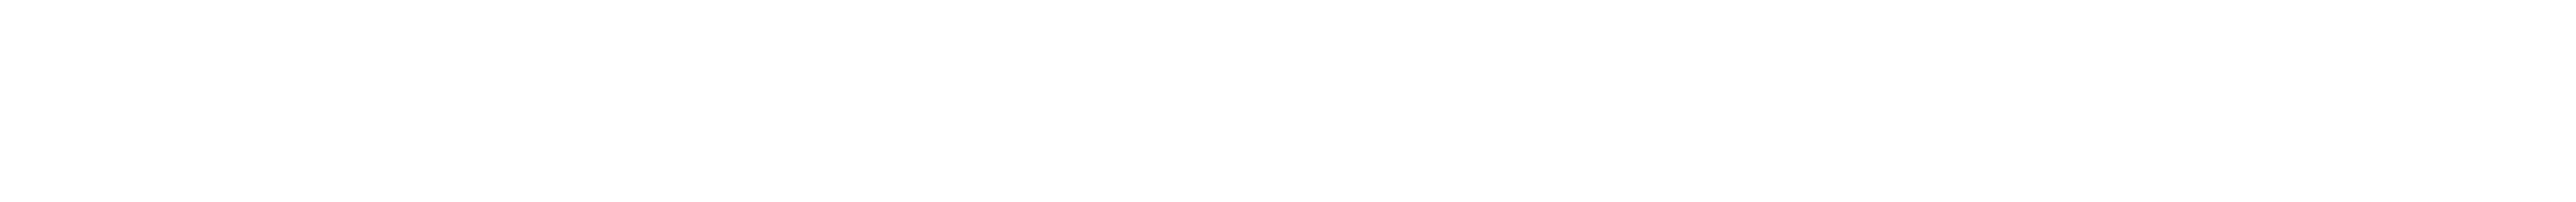 株式会社ビジコン・ジャパンのロゴ画像